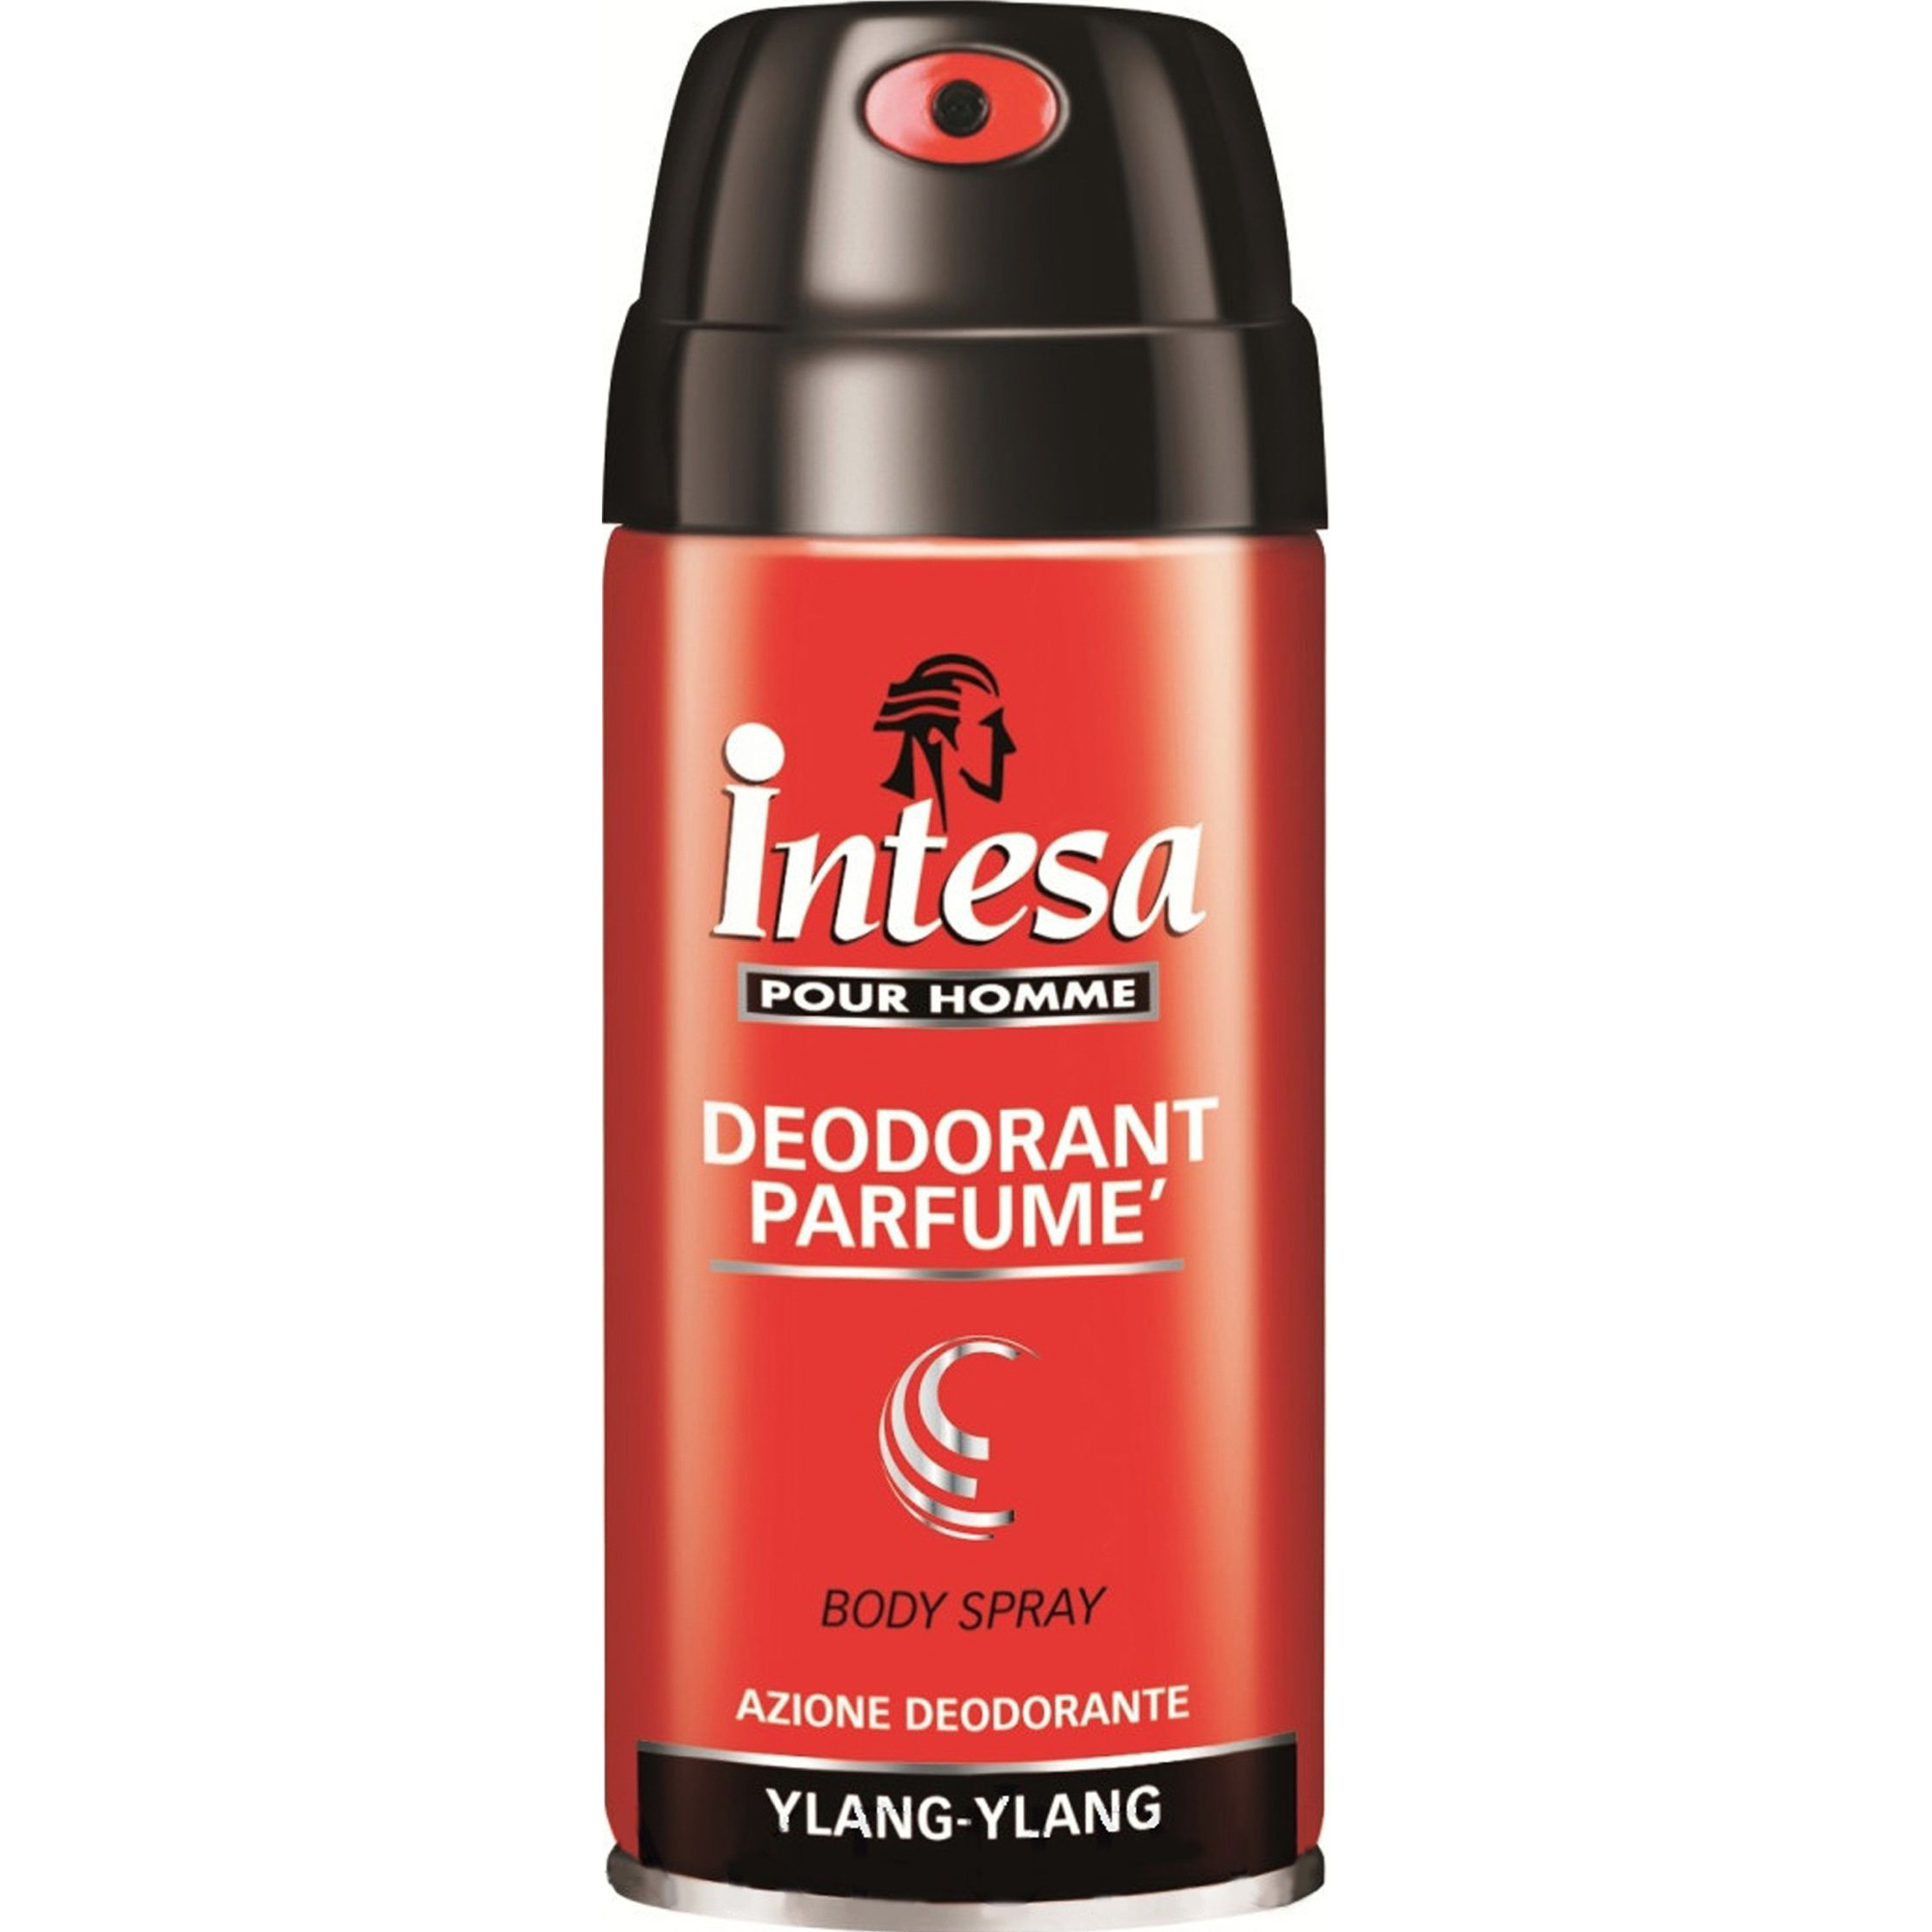 Дезодорант Intesa Classic Black Ylang-Ylang 150 мл парфюмированный дезодорант для тела intesa pour homme deodorant 24h ylang ylang 150 мл